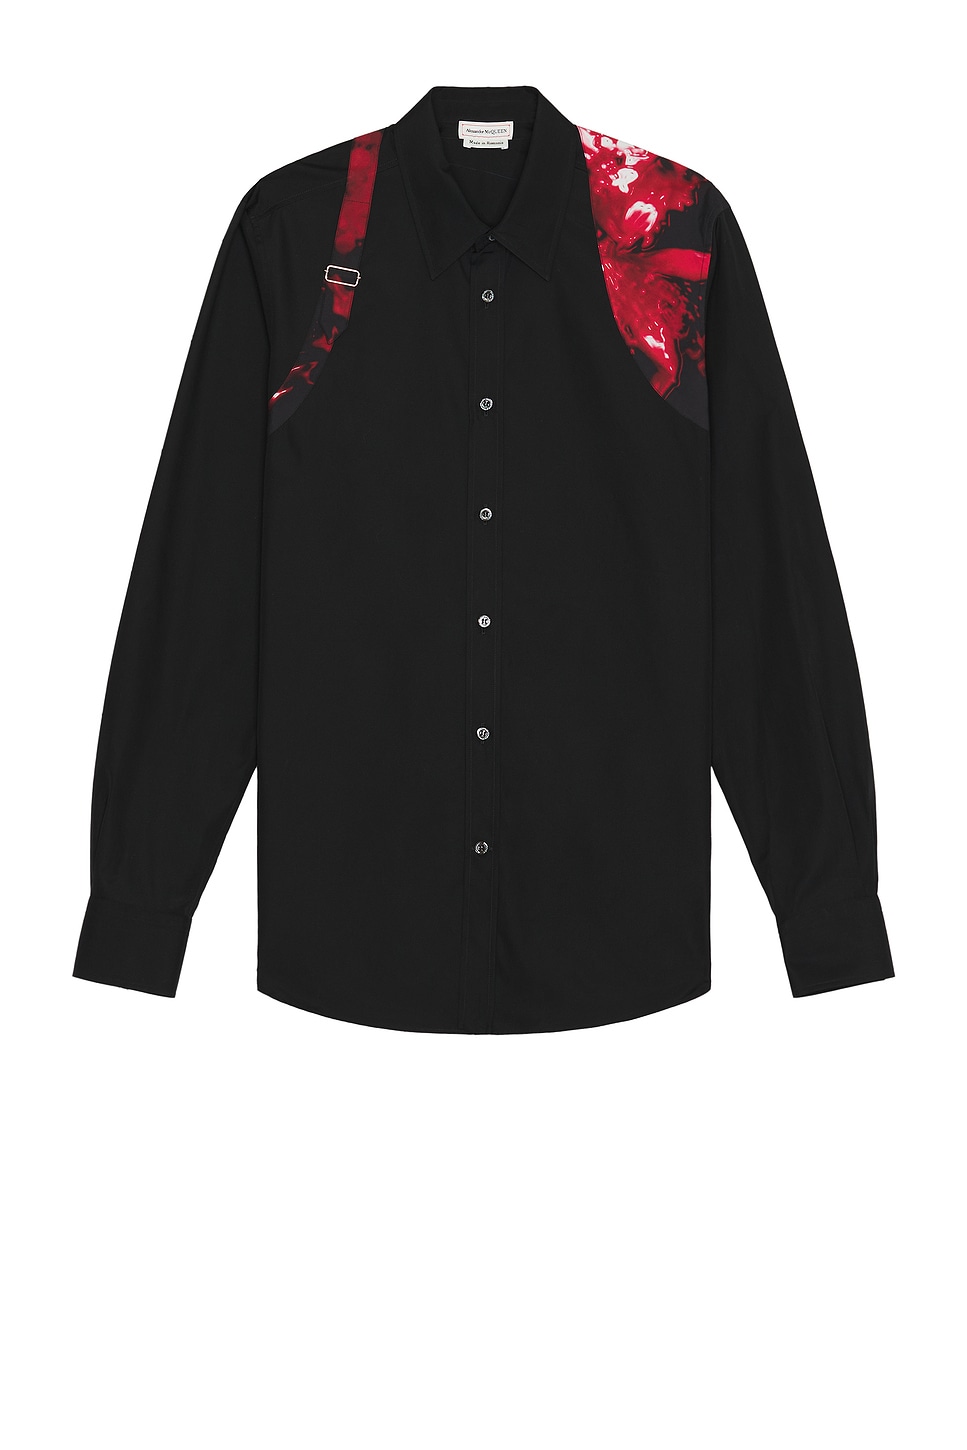 Image 1 of Alexander McQueen Harness Shirt in Black